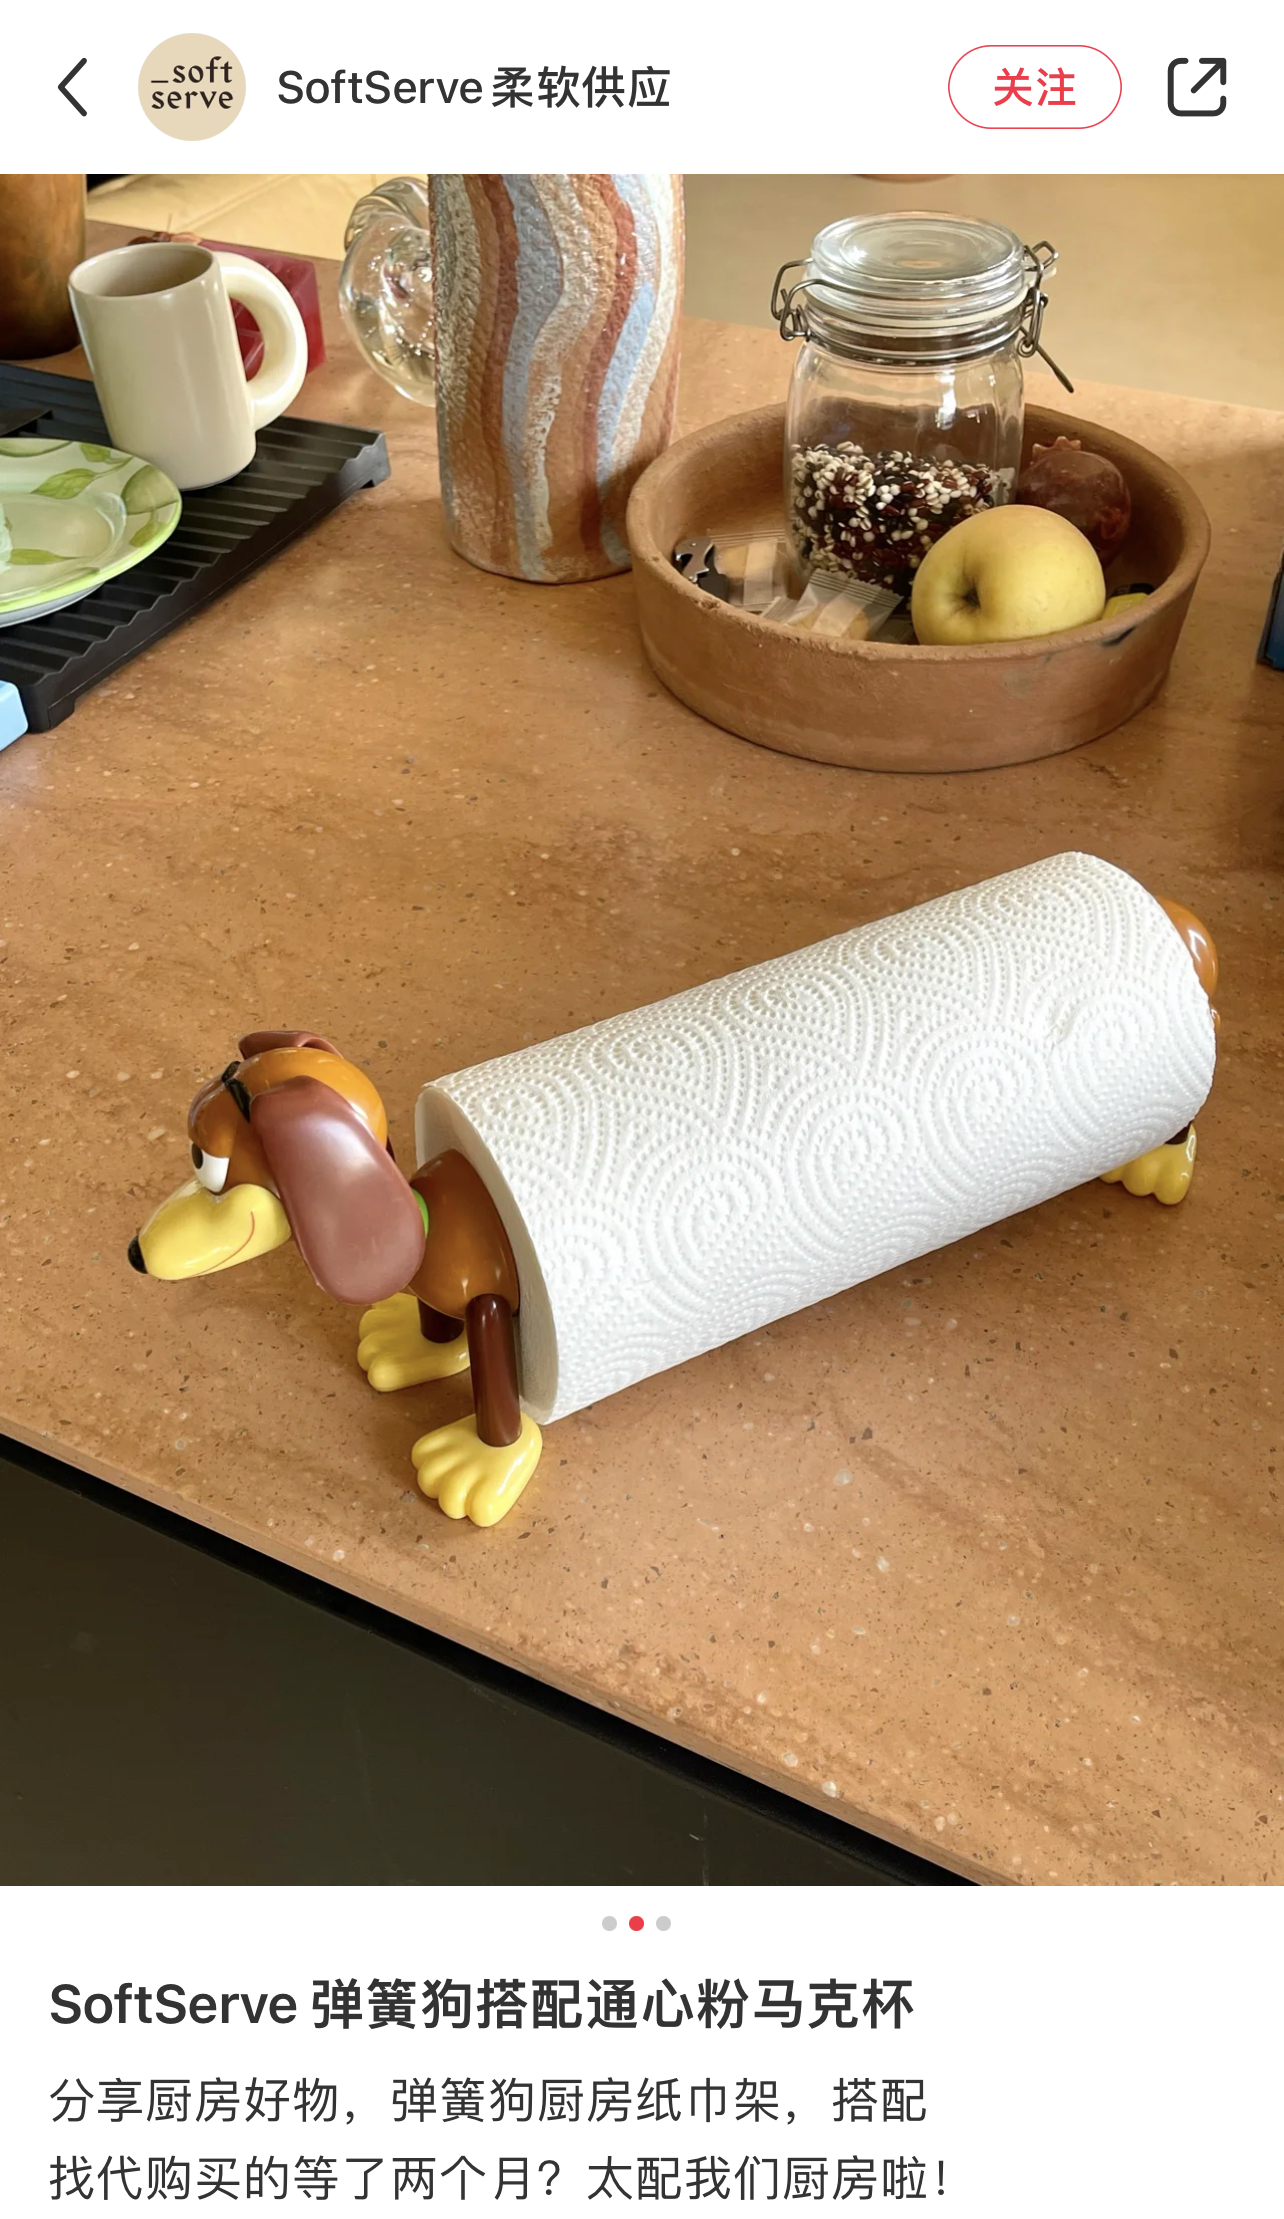 【现货】日本东京迪士尼代购正版弹簧狗日常厨房用具纸巾架-图2